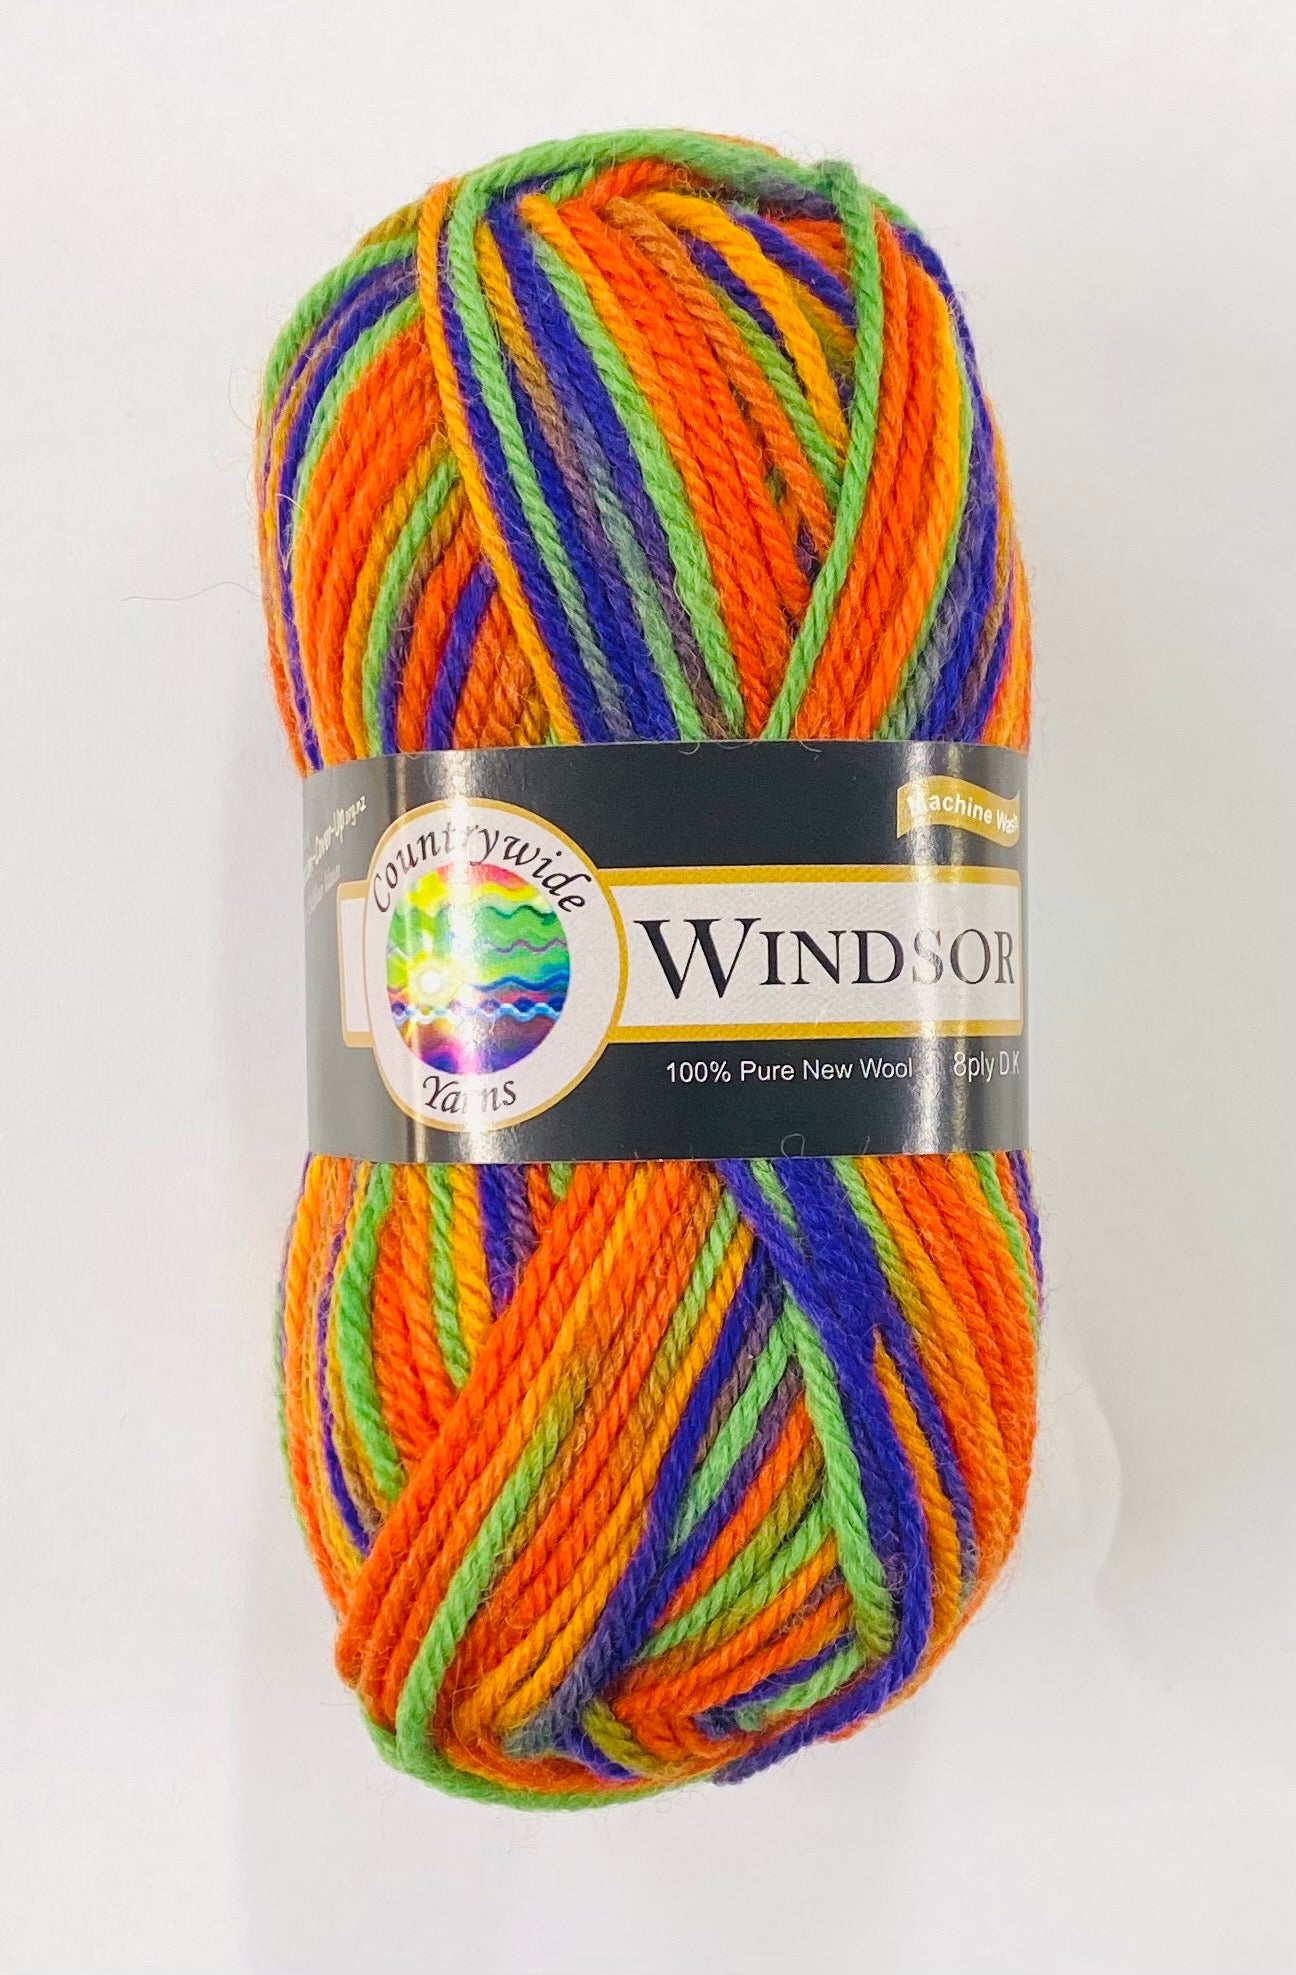 Windsor Variegated 8 ply Wool